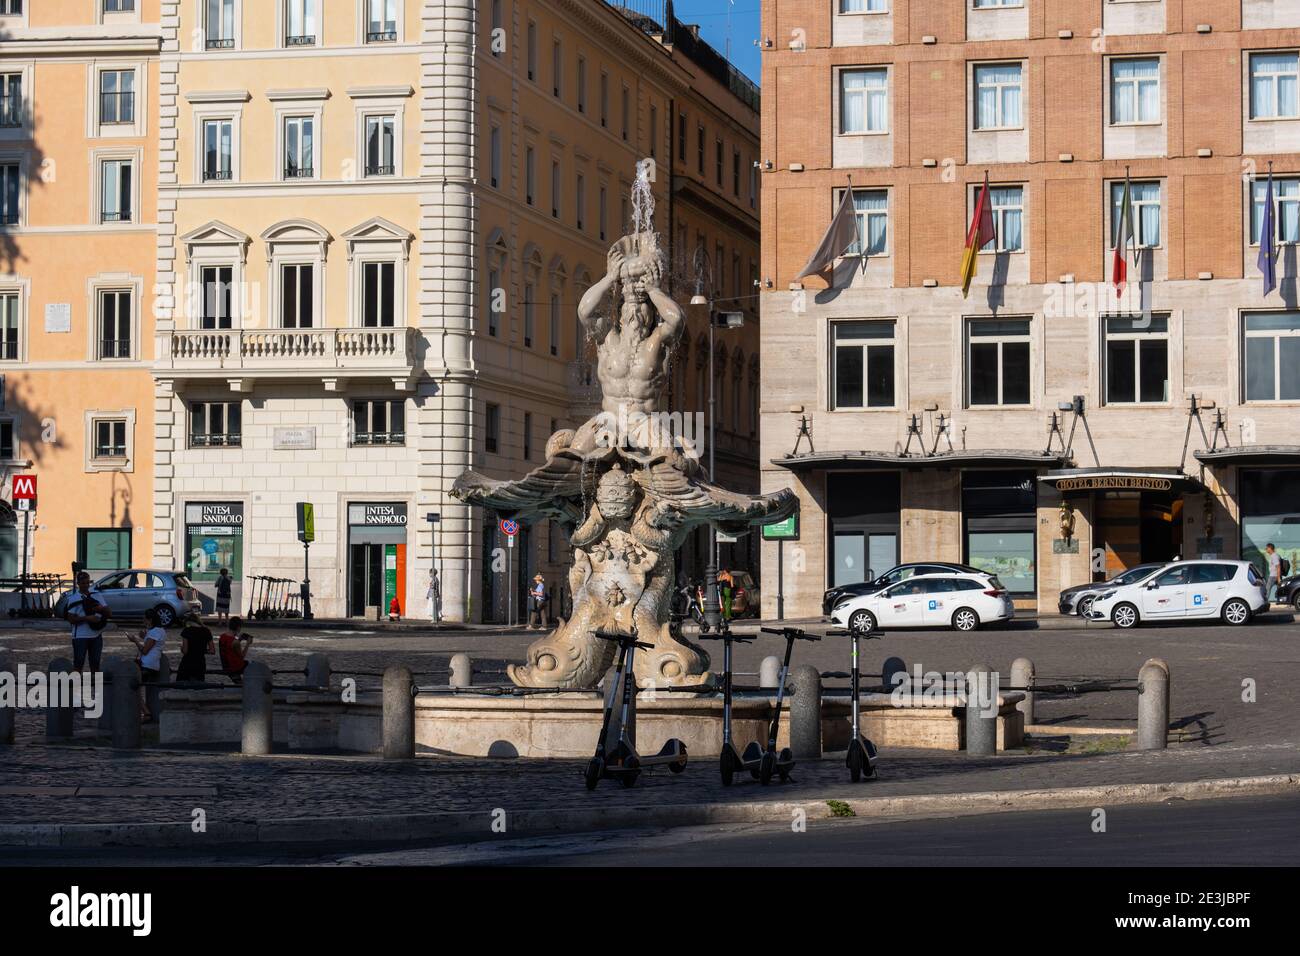 Triton Fountain (Fontana del Tritone) sculpted by Bernini in 1643 at Piazza Barberini square in Rome, Italy Stock Photo